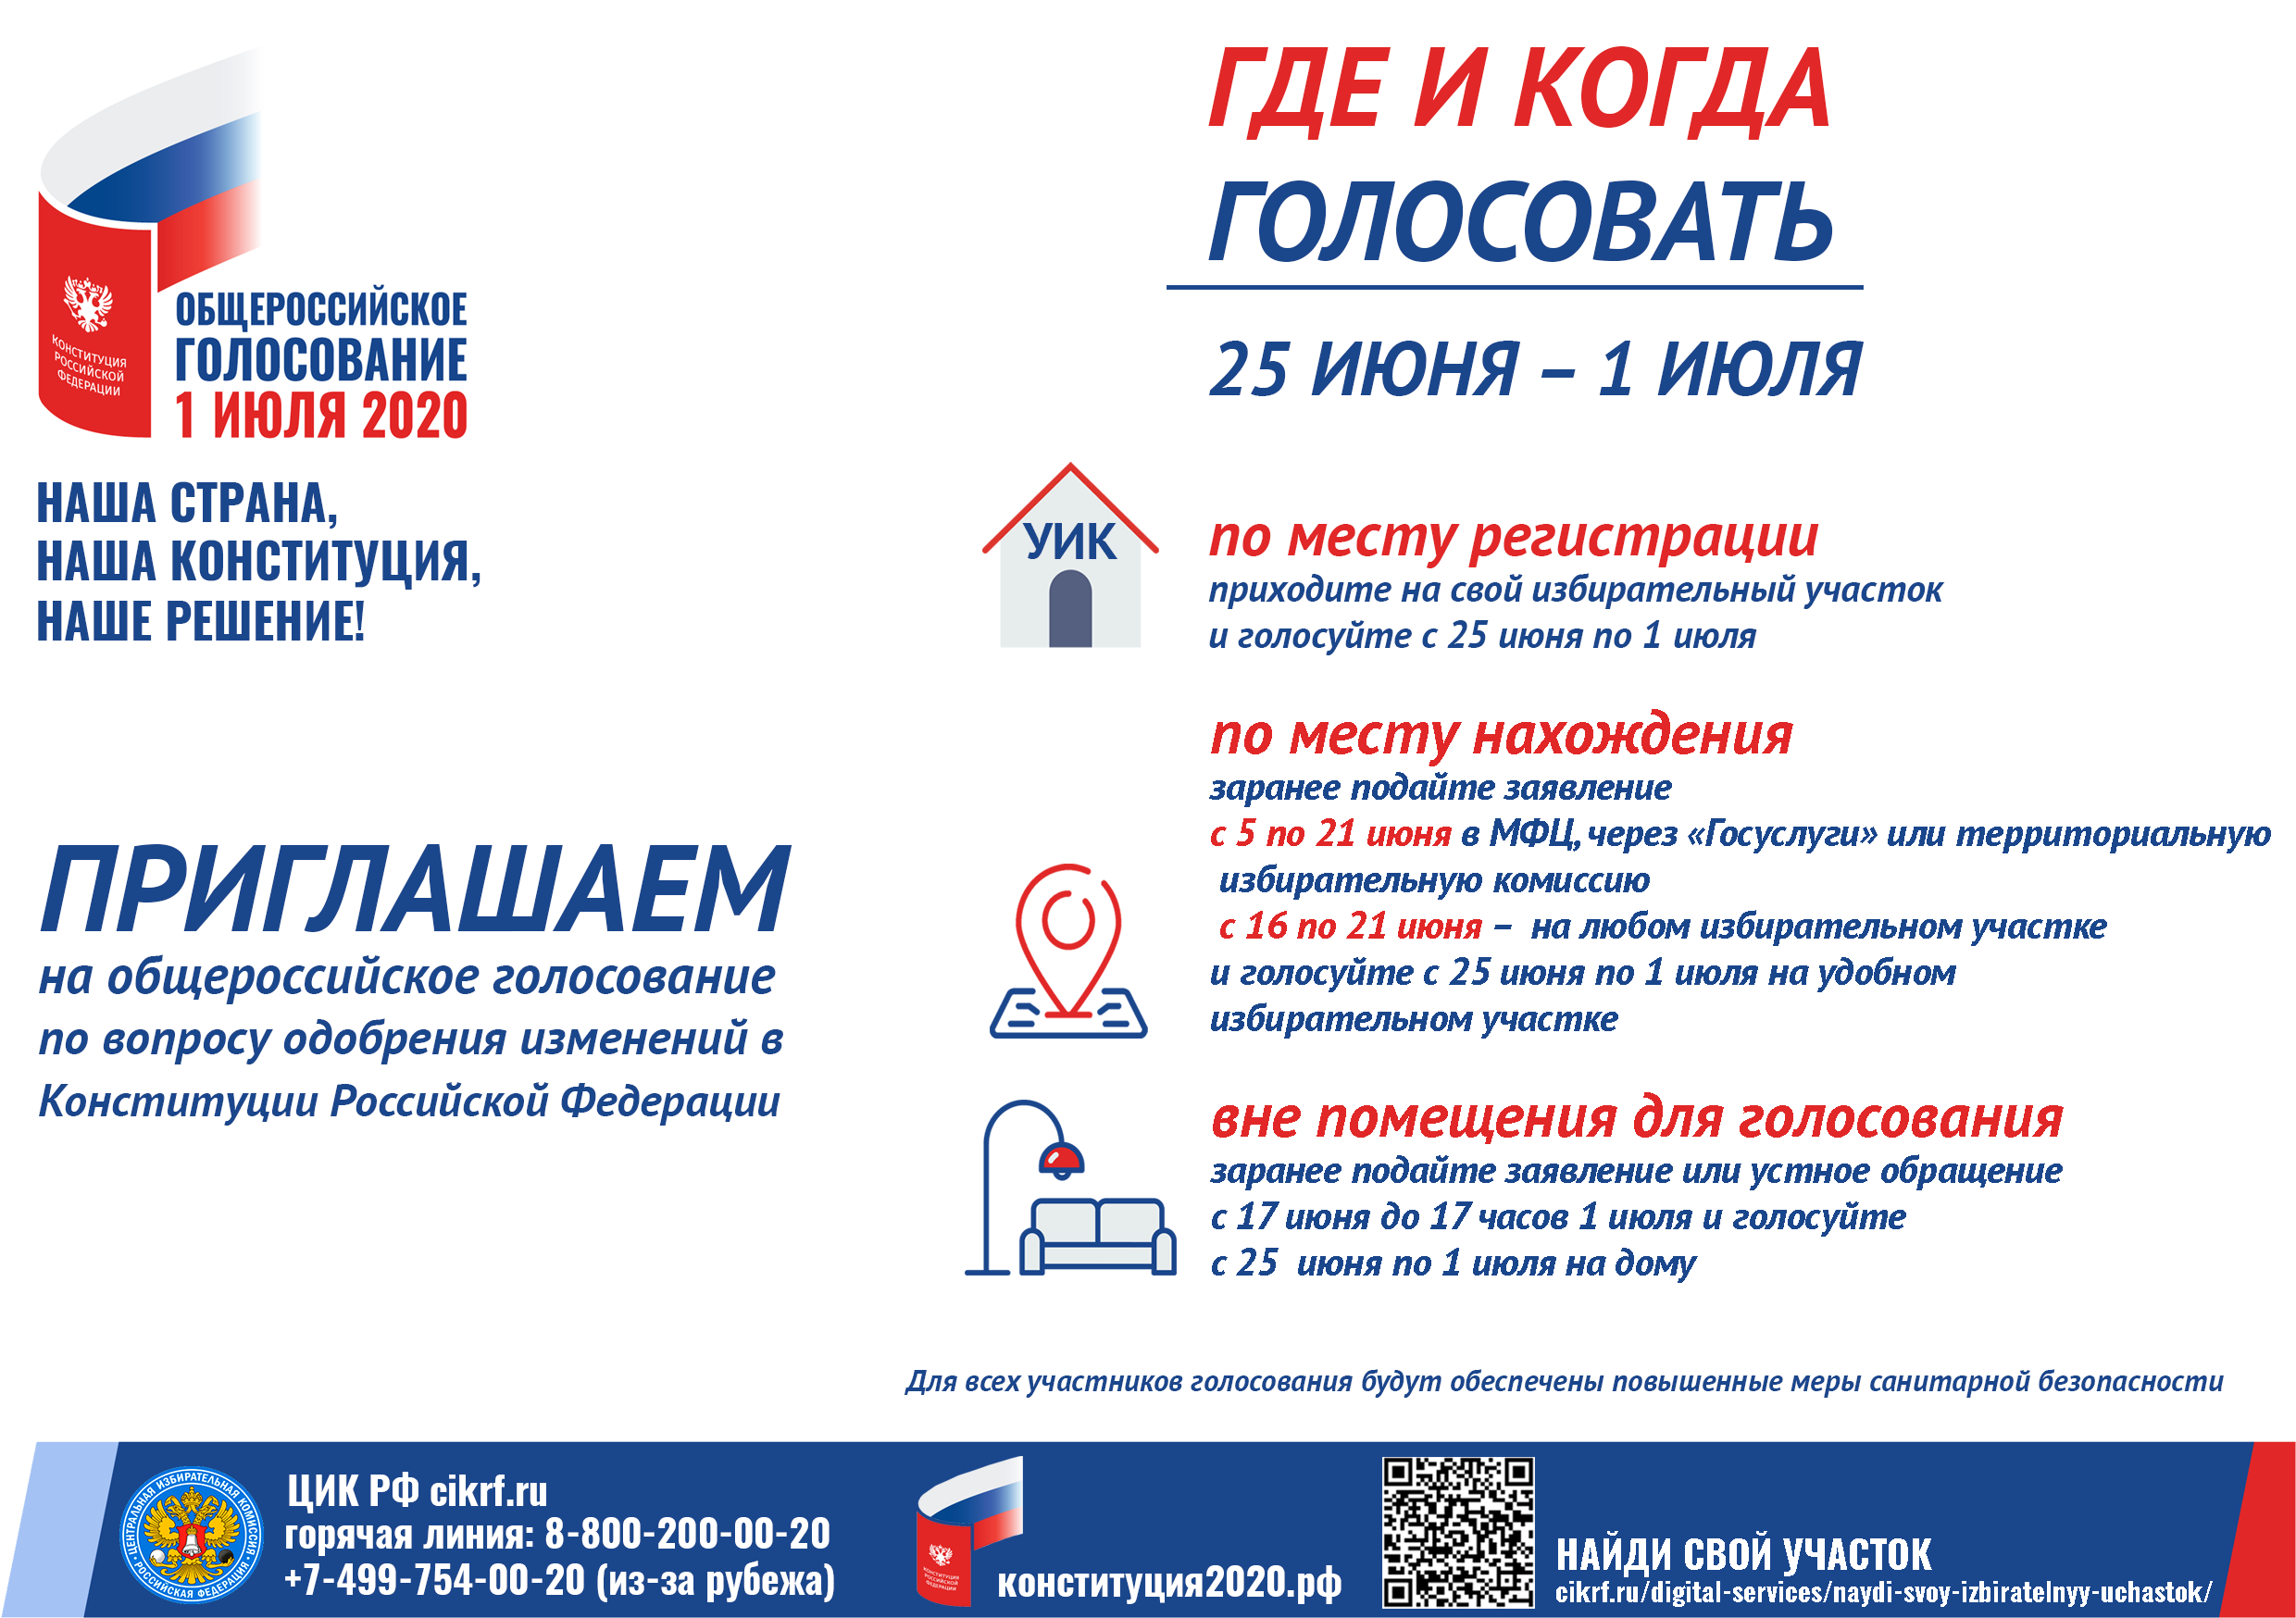 Для жителей Санкт-Петербурга открыта горячая линия МФЦ по вопросам голосования по месту нахождения.